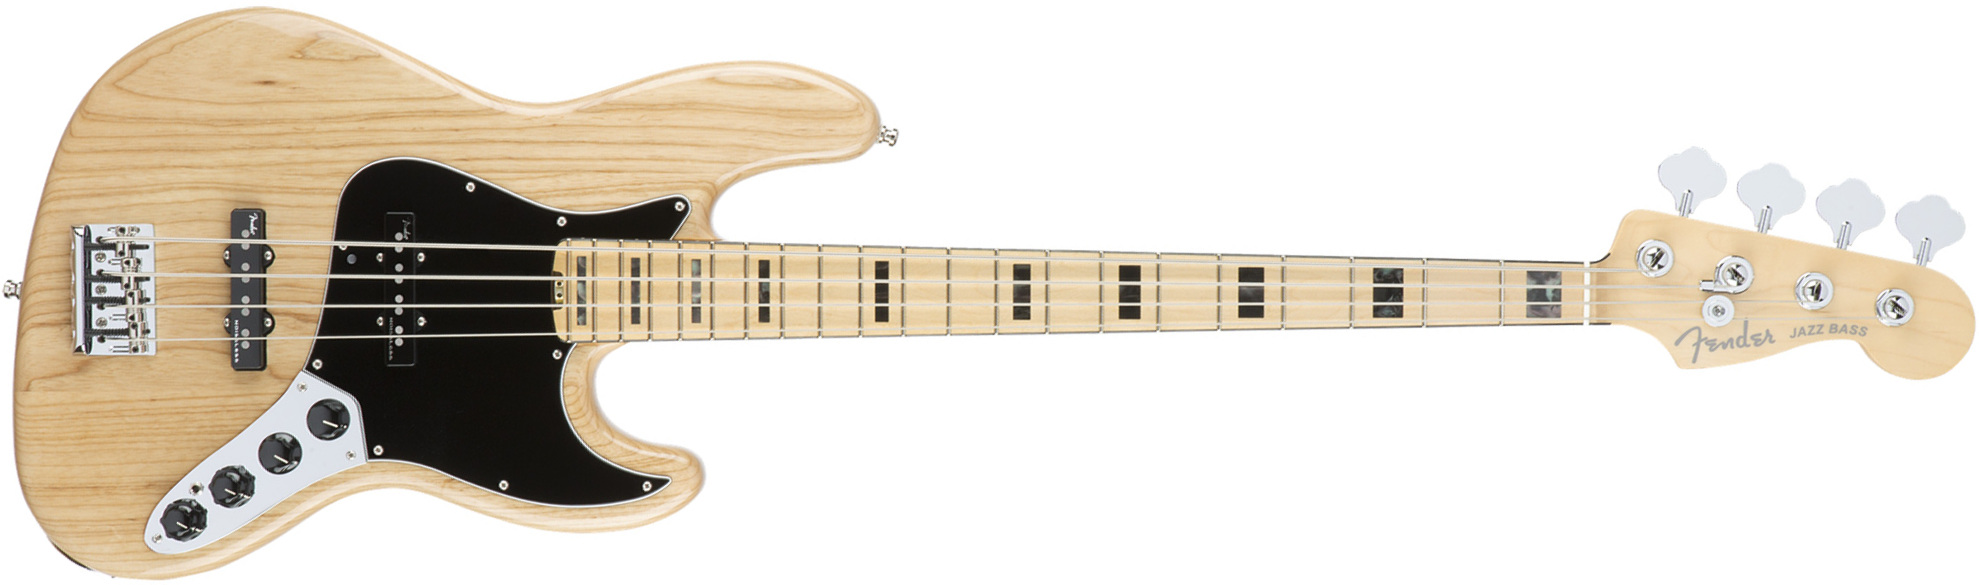 Fender Jazz Bass American Elite Ash 2016 (usa, Mn) - Natural - Bajo eléctrico de cuerpo sólido - Main picture